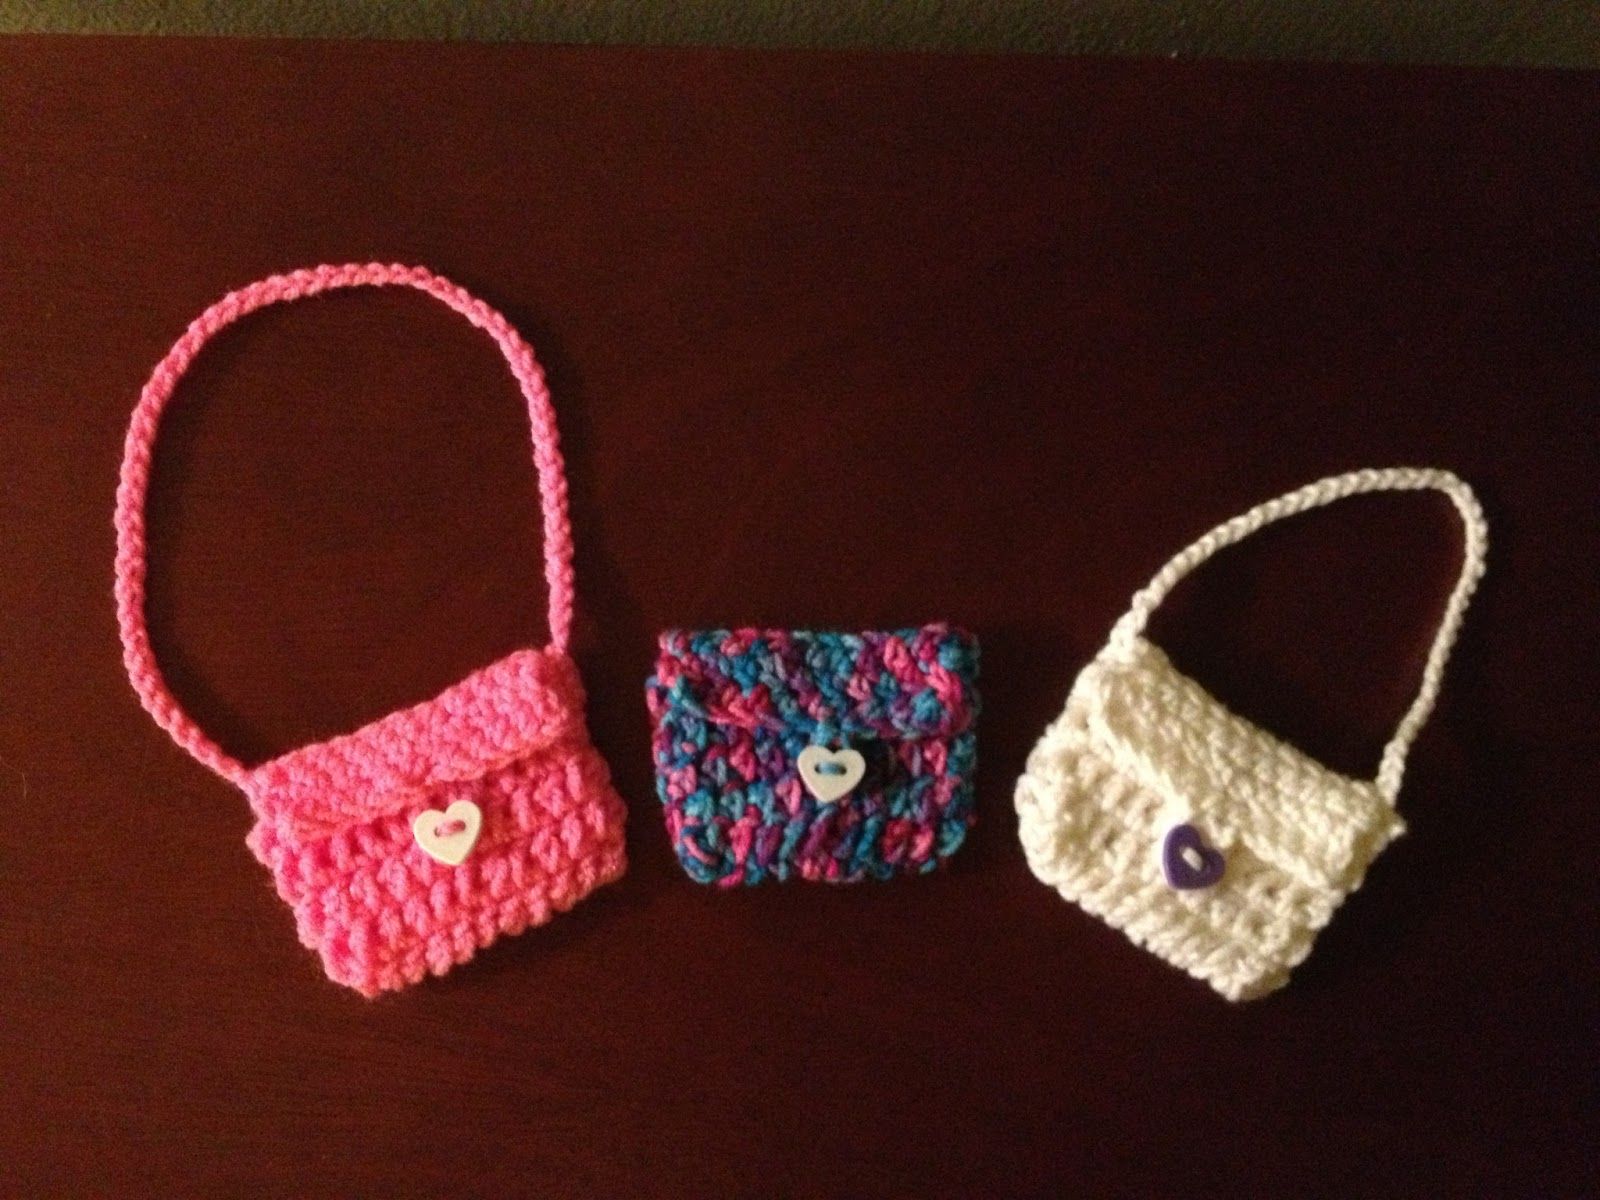 Crochet doll purse pattern free